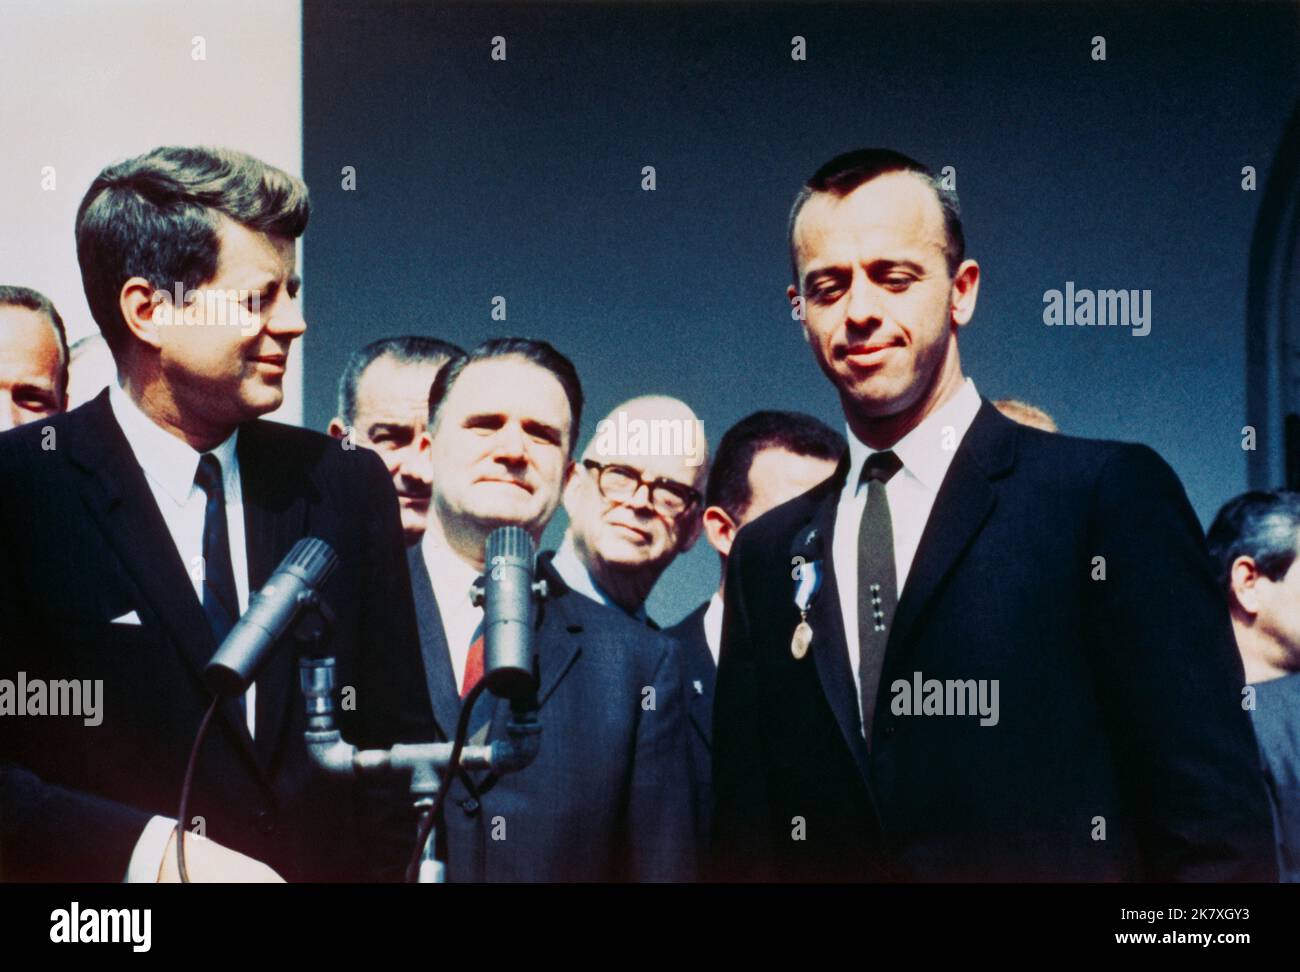 Präsident John F. Kennedy überreicht den Astronauten Alan B. Shepard Jr. bei einer Zeremonie im Rosengarten am 8. Mai 1961 im Weißen Haus mit dem Distinguished Service Medal Award der NASA. Vizepräsident Lyndon B. Johnson, NASA-Administrator James E. Webb und mehrere NASA-Astronauten stehen im Hintergrund. Nur drei Wochen später würde Kennedy Amerika verpflichten, vor dem Ende des Jahrzehnts einen Mann auf dem Mond zu landen. Bild: NASA Stockfoto